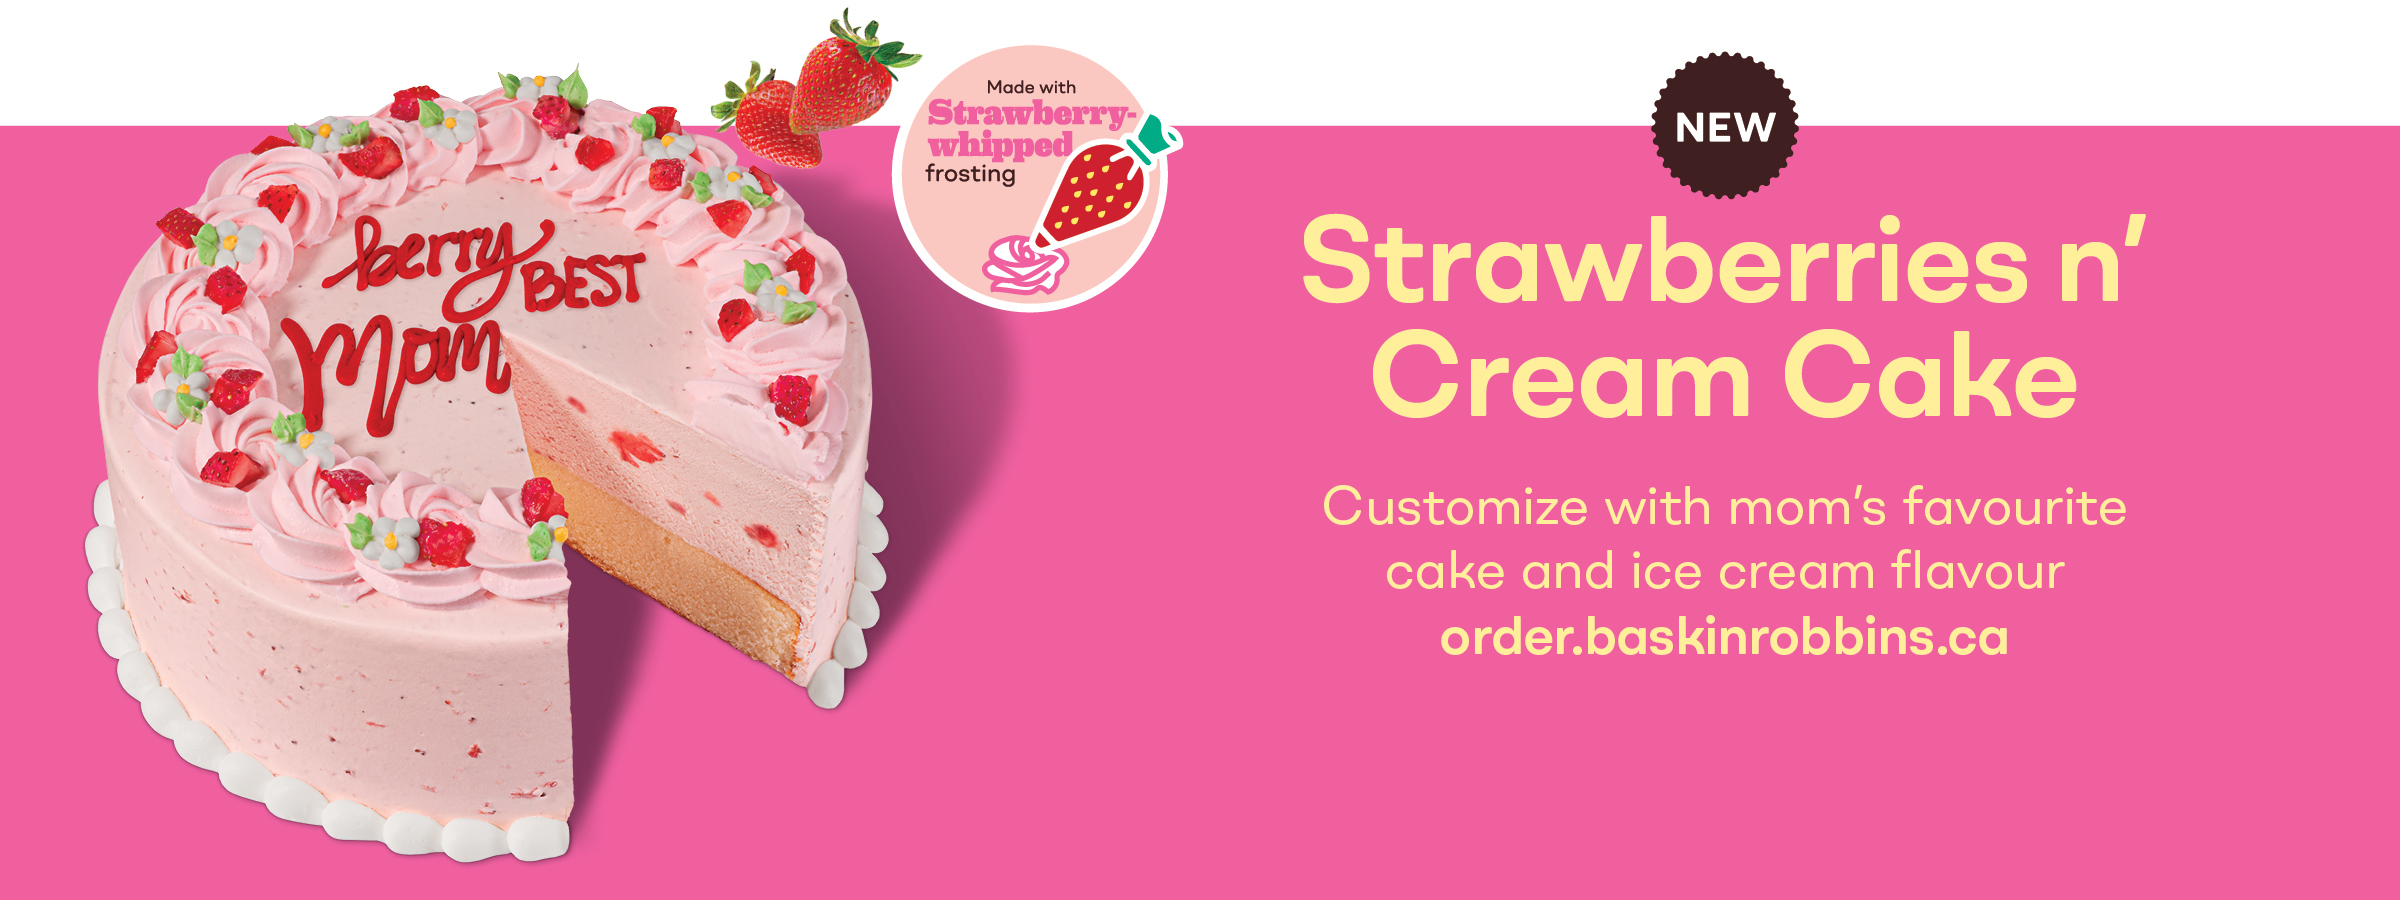 NEW! Strawberries n’ Cream Cake